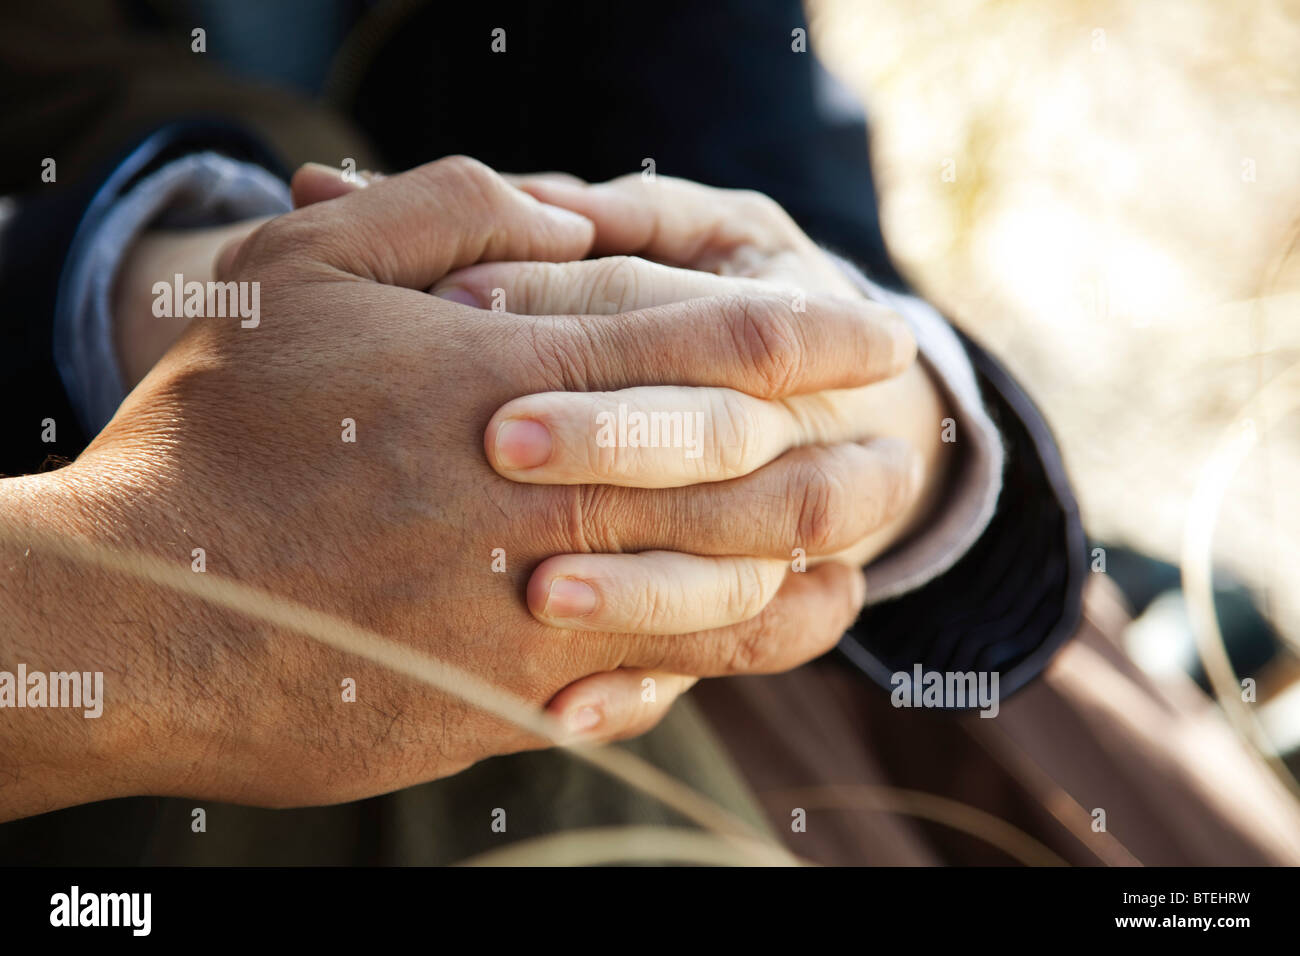 Giovane Holding Hands, ritagliato Foto Stock